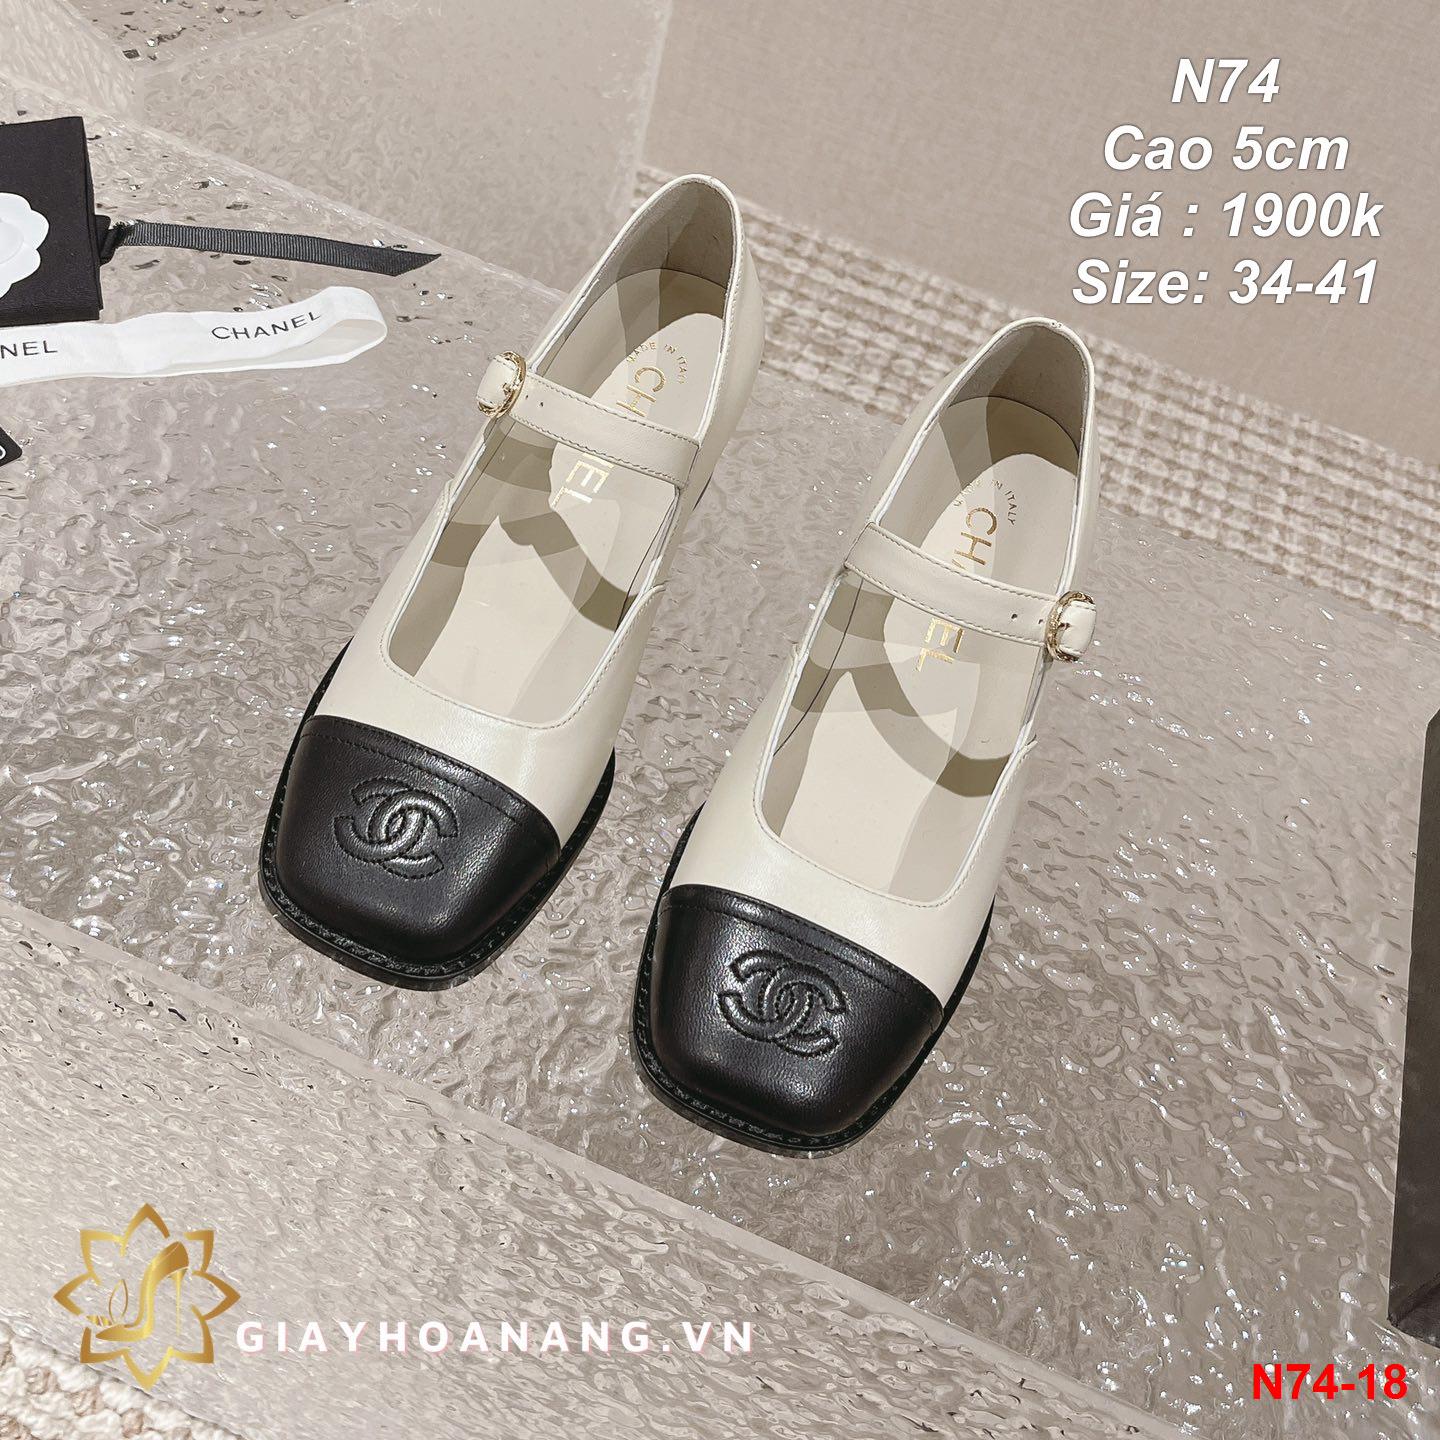 N74-18 Chanel giày cao 5cm siêu cấp